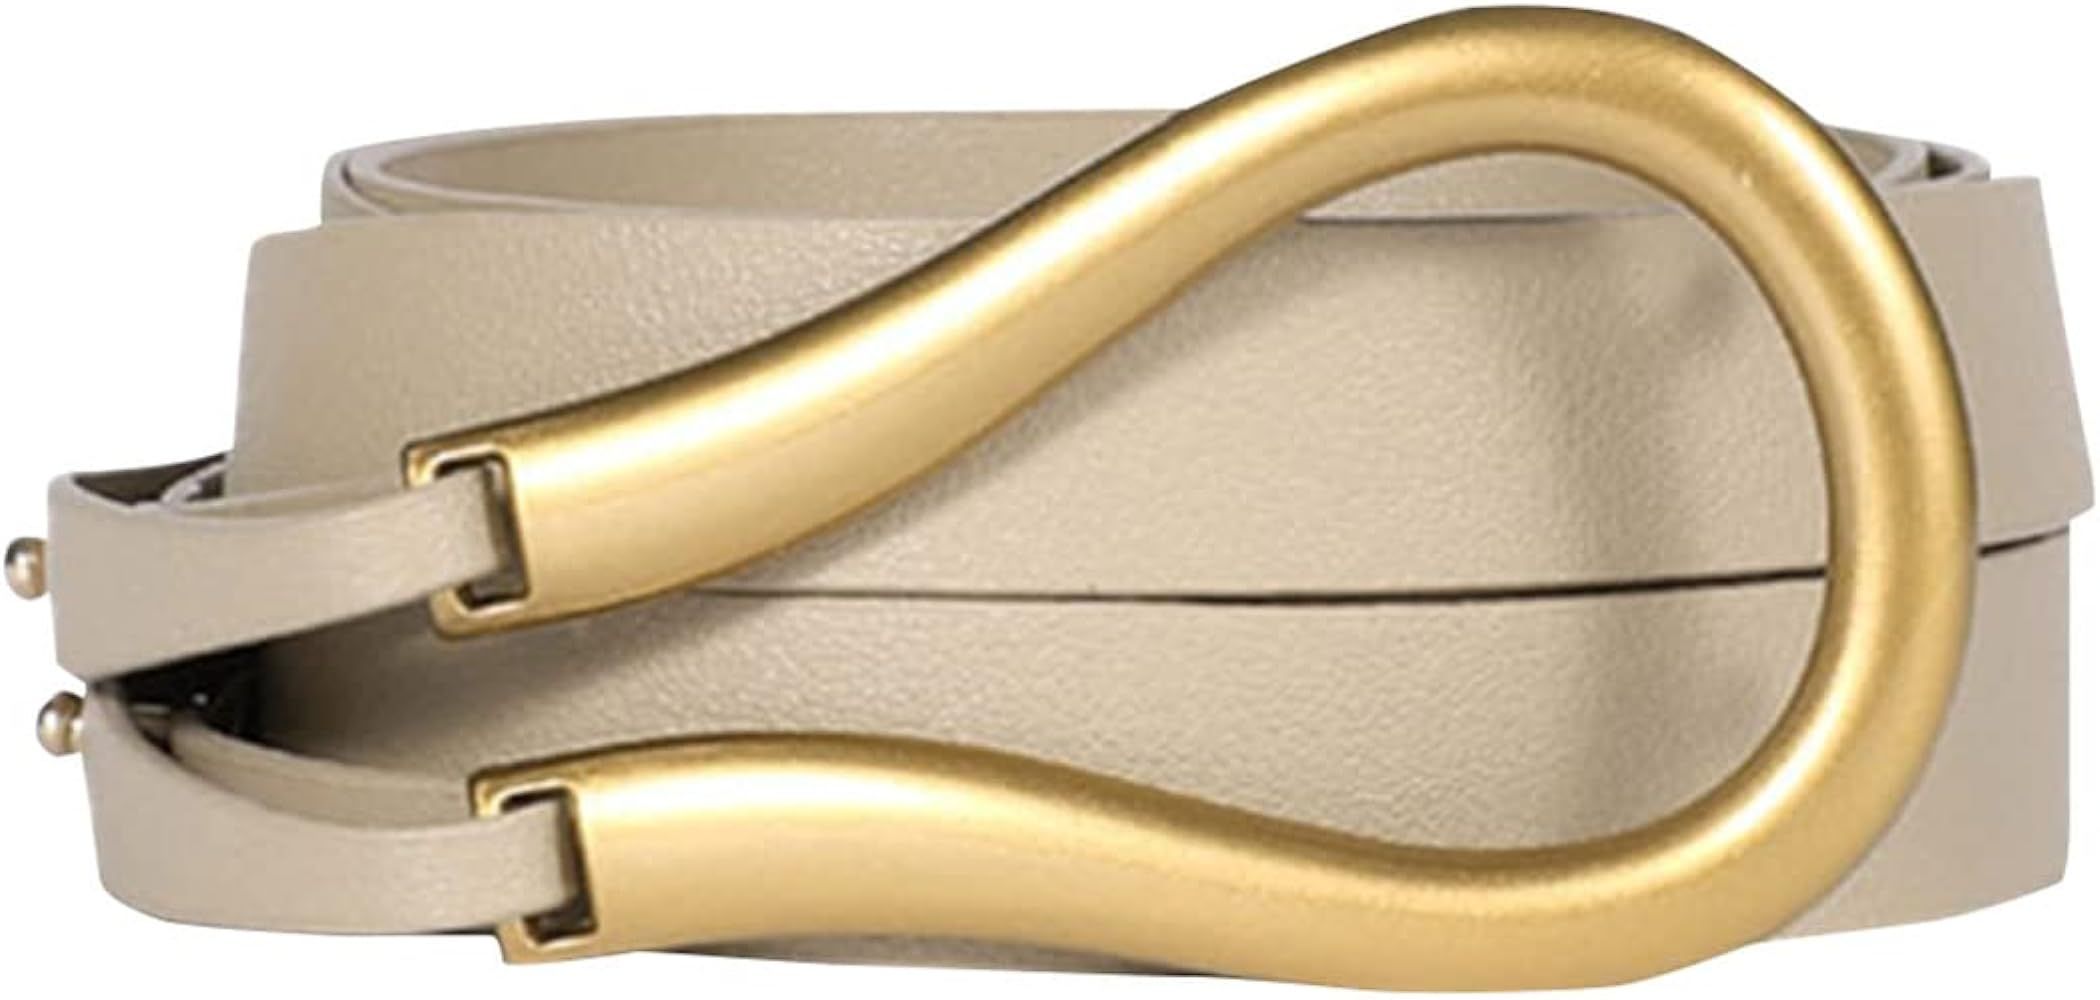 Women PU Leather Waist Belt Double Strap Tie Wrap Cinch Belt | Amazon (US)